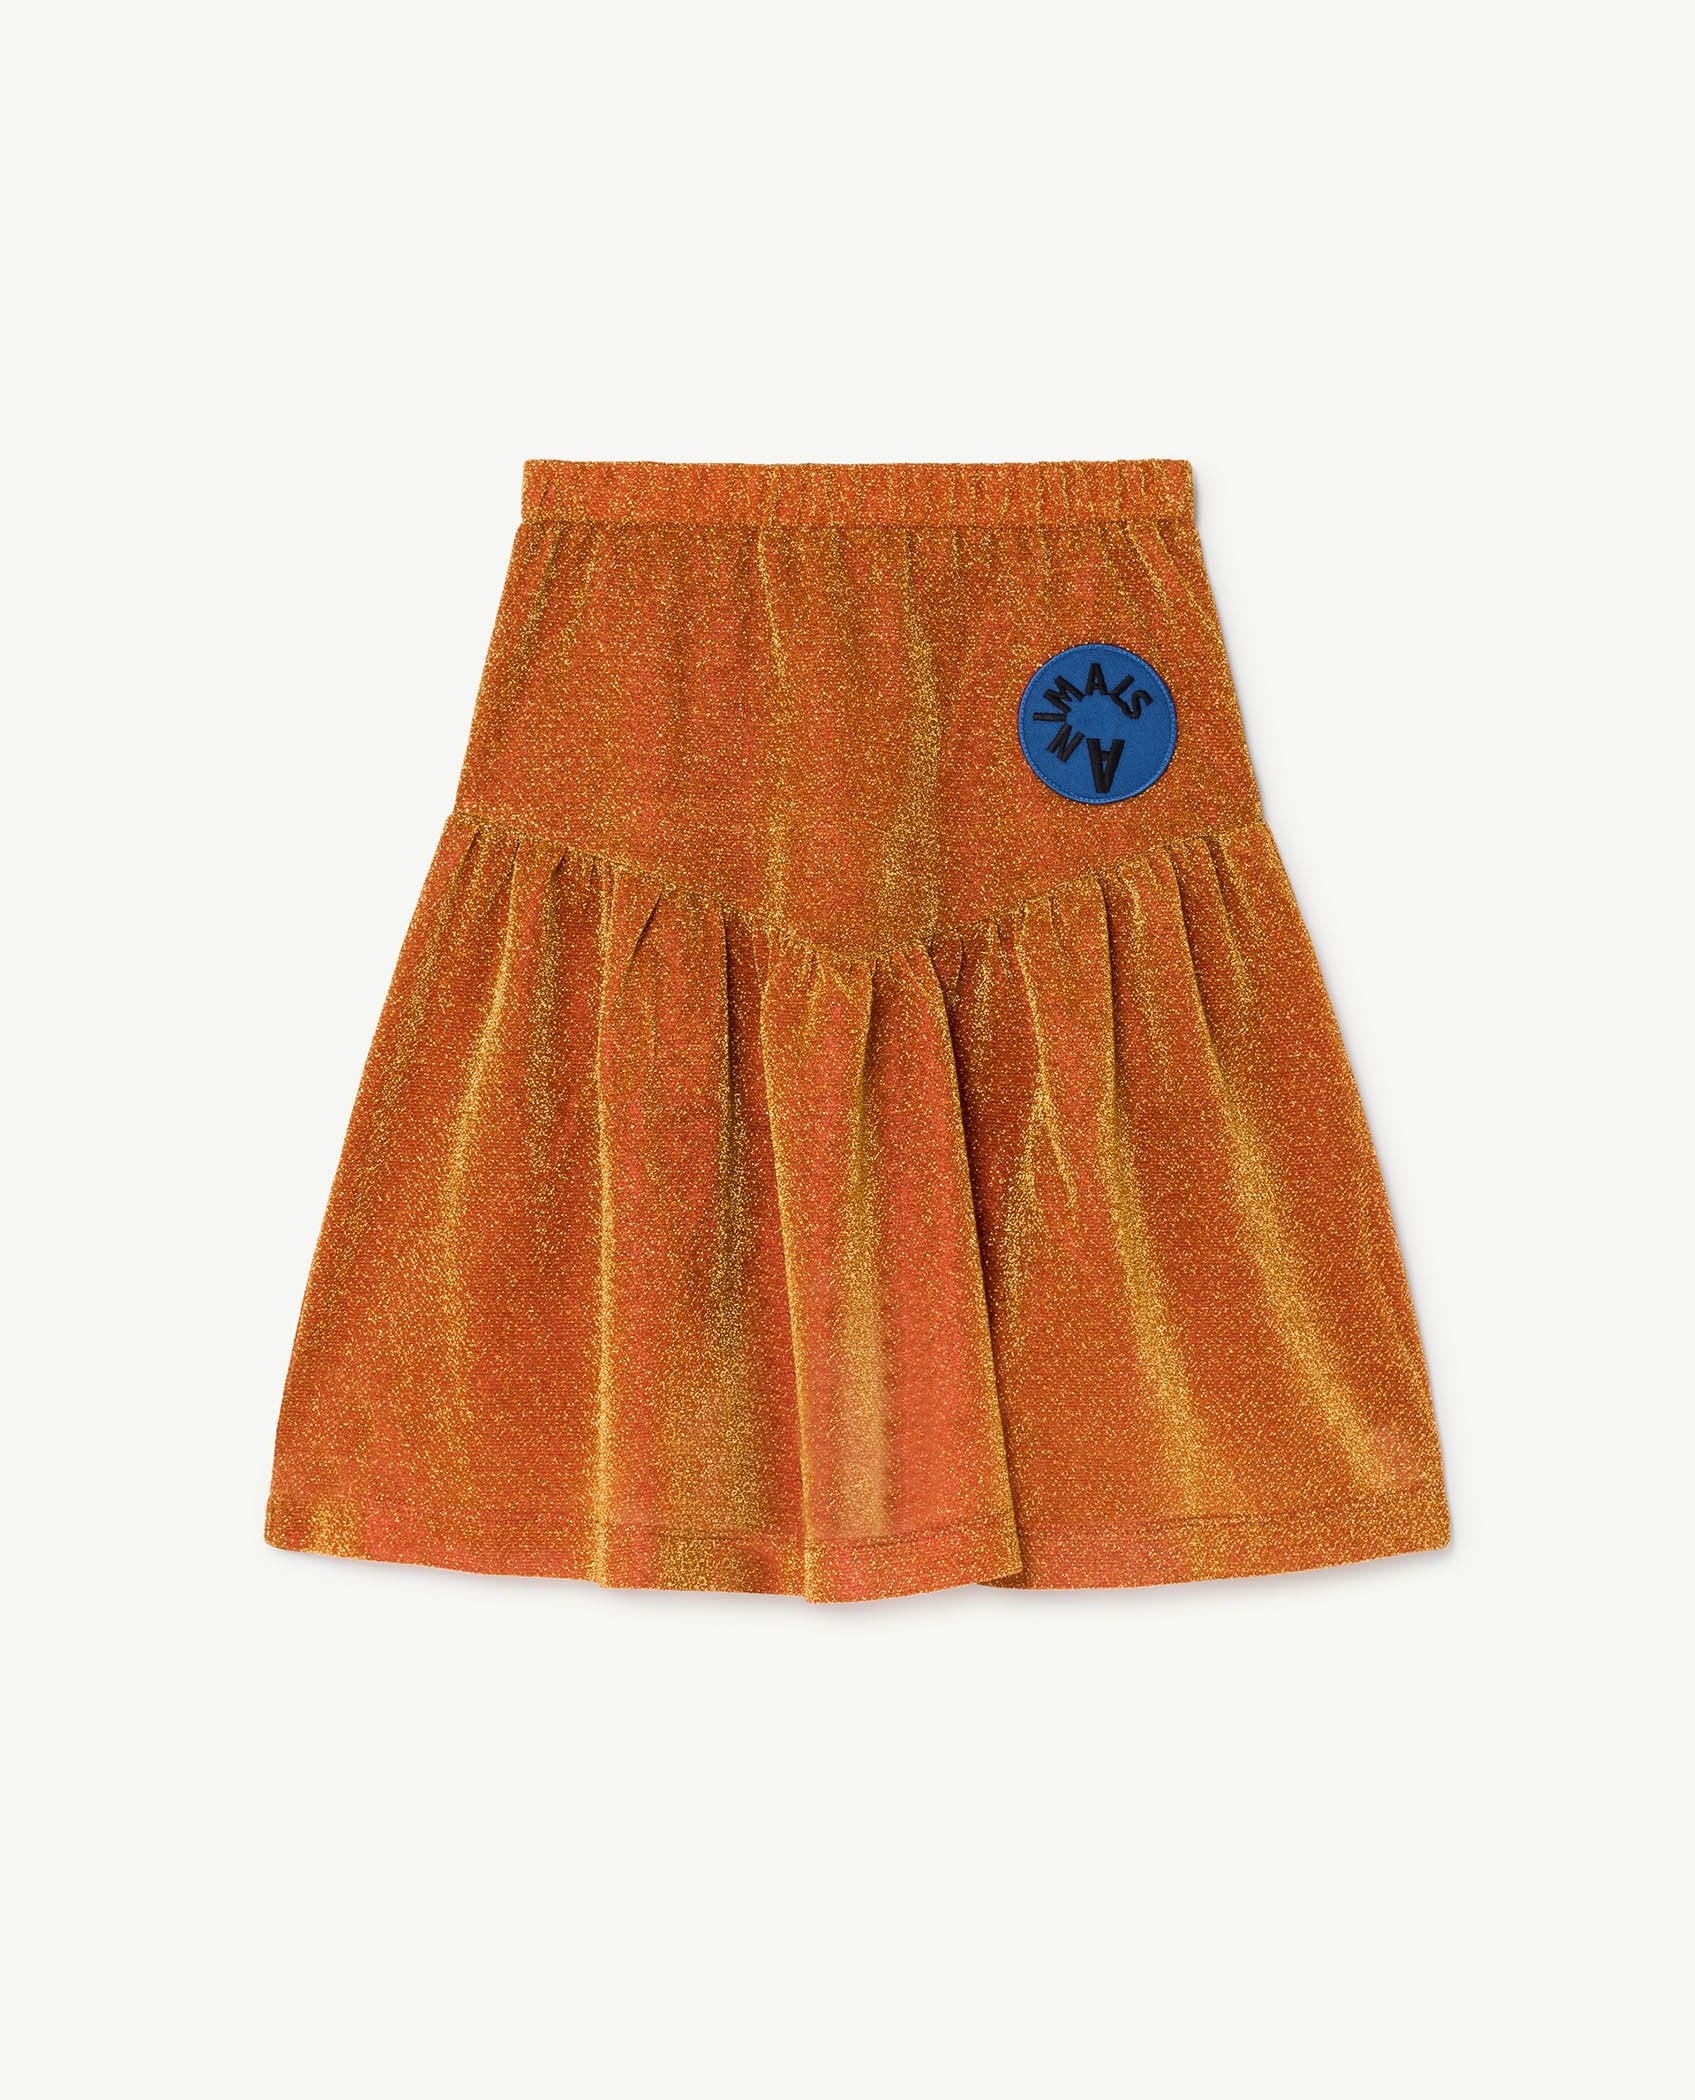 Orange Turkey Skirt PRODUCT FRONT